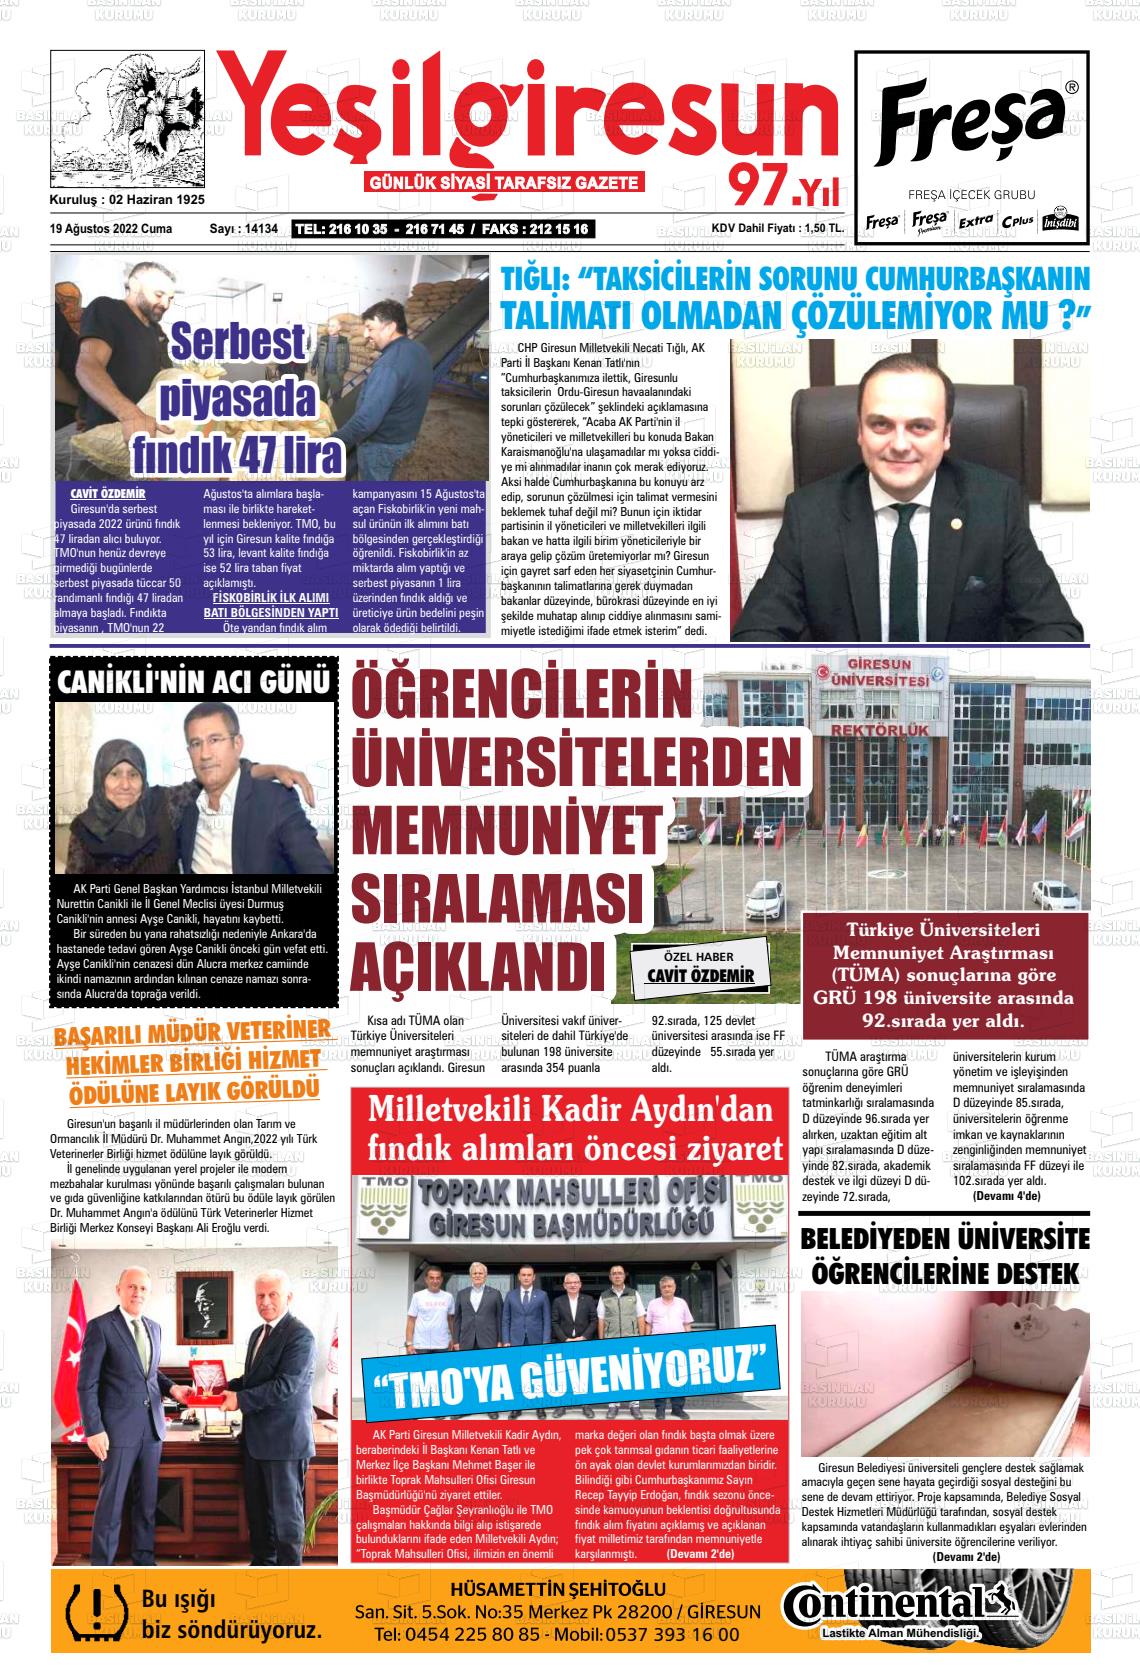 19 Ağustos 2022 Yeşil Giresun Gazete Manşeti